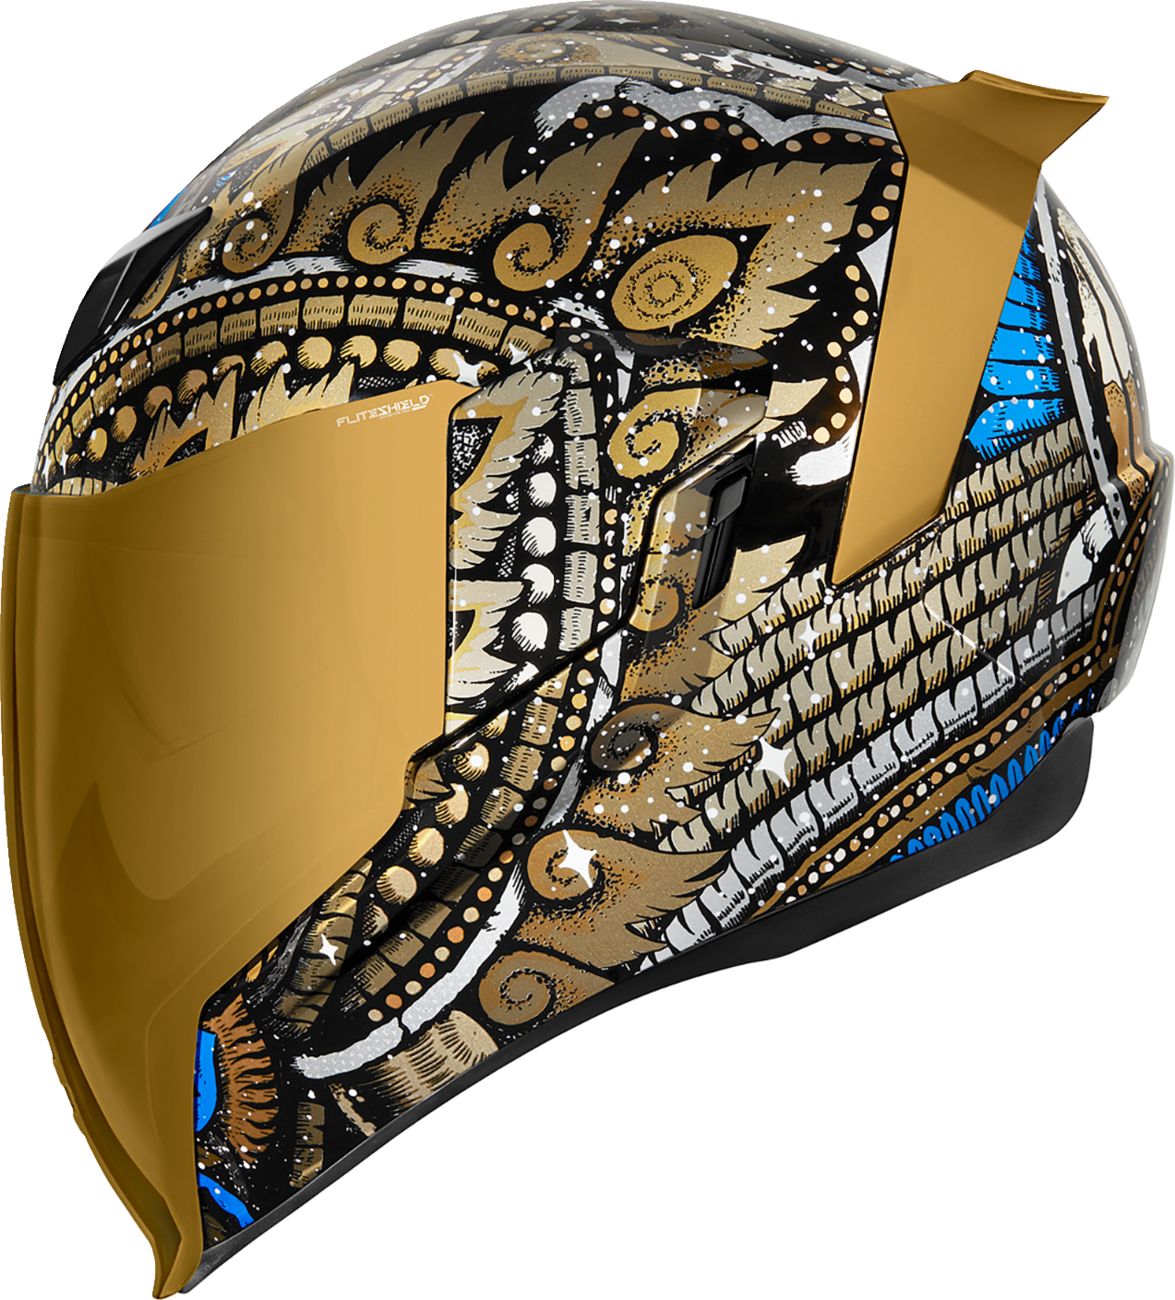 ICON Airflite™ Helmet - DayTripper - Gold - XL 0101-14703